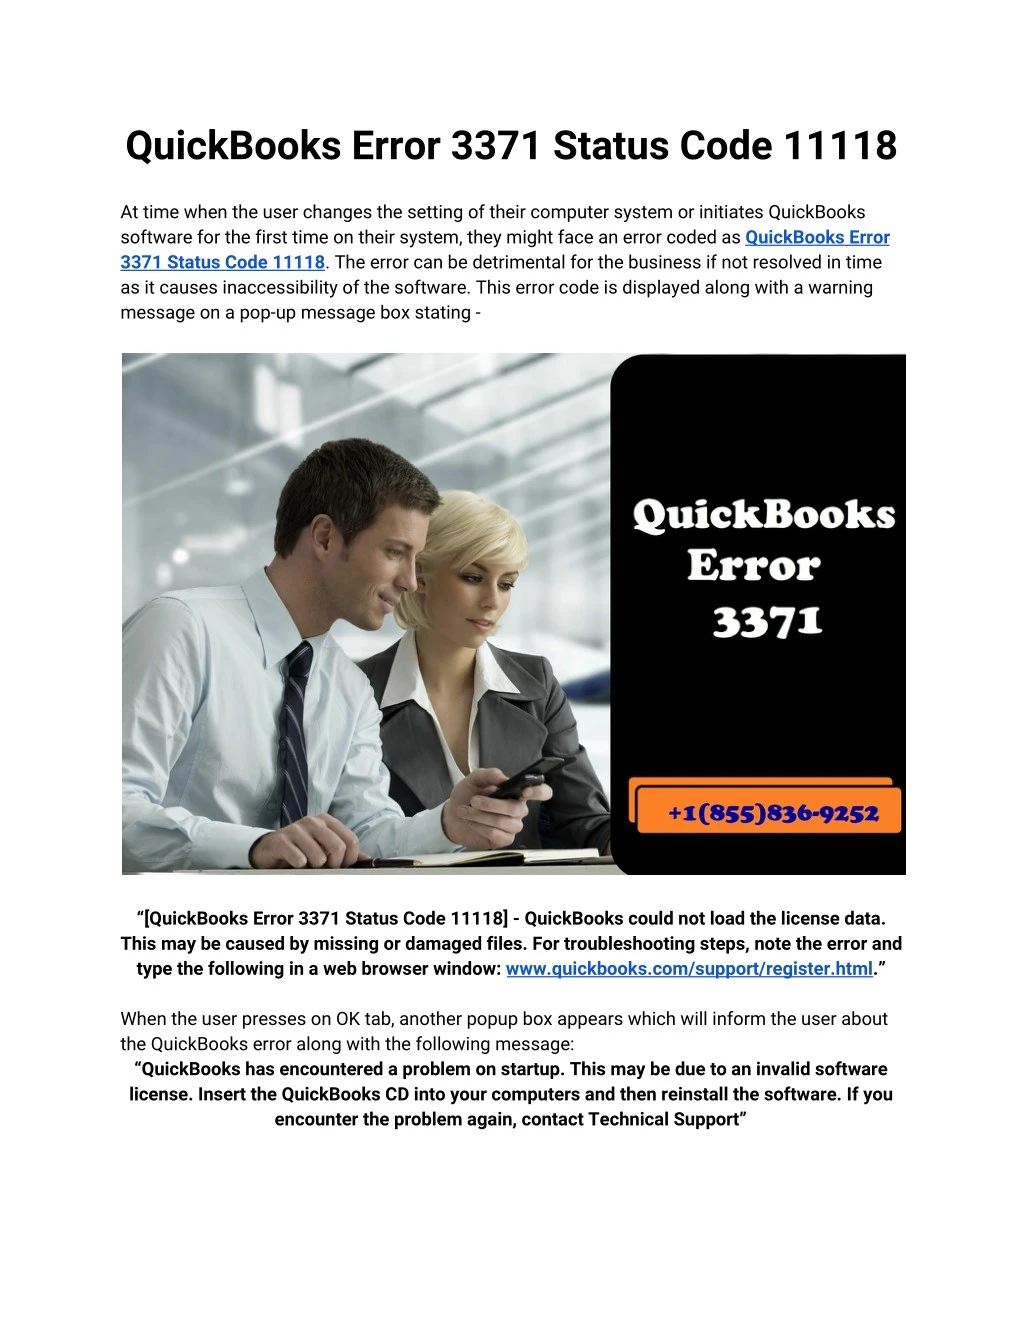 quickbooks error 3371 status code 11118 at time